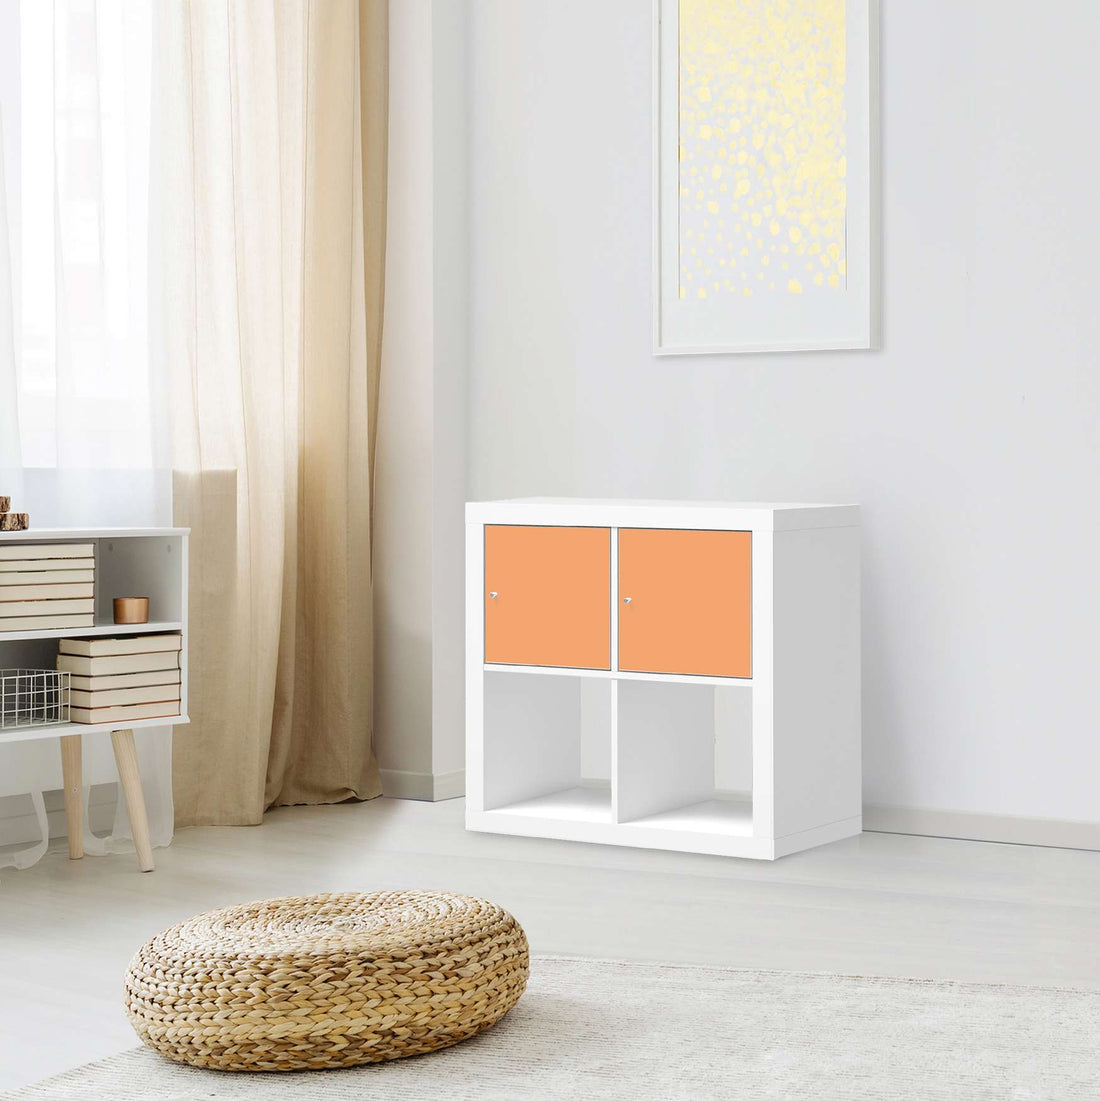 Möbelfolie Orange Light - IKEA Kallax Regal 2 Türen Quer - Wohnzimmer